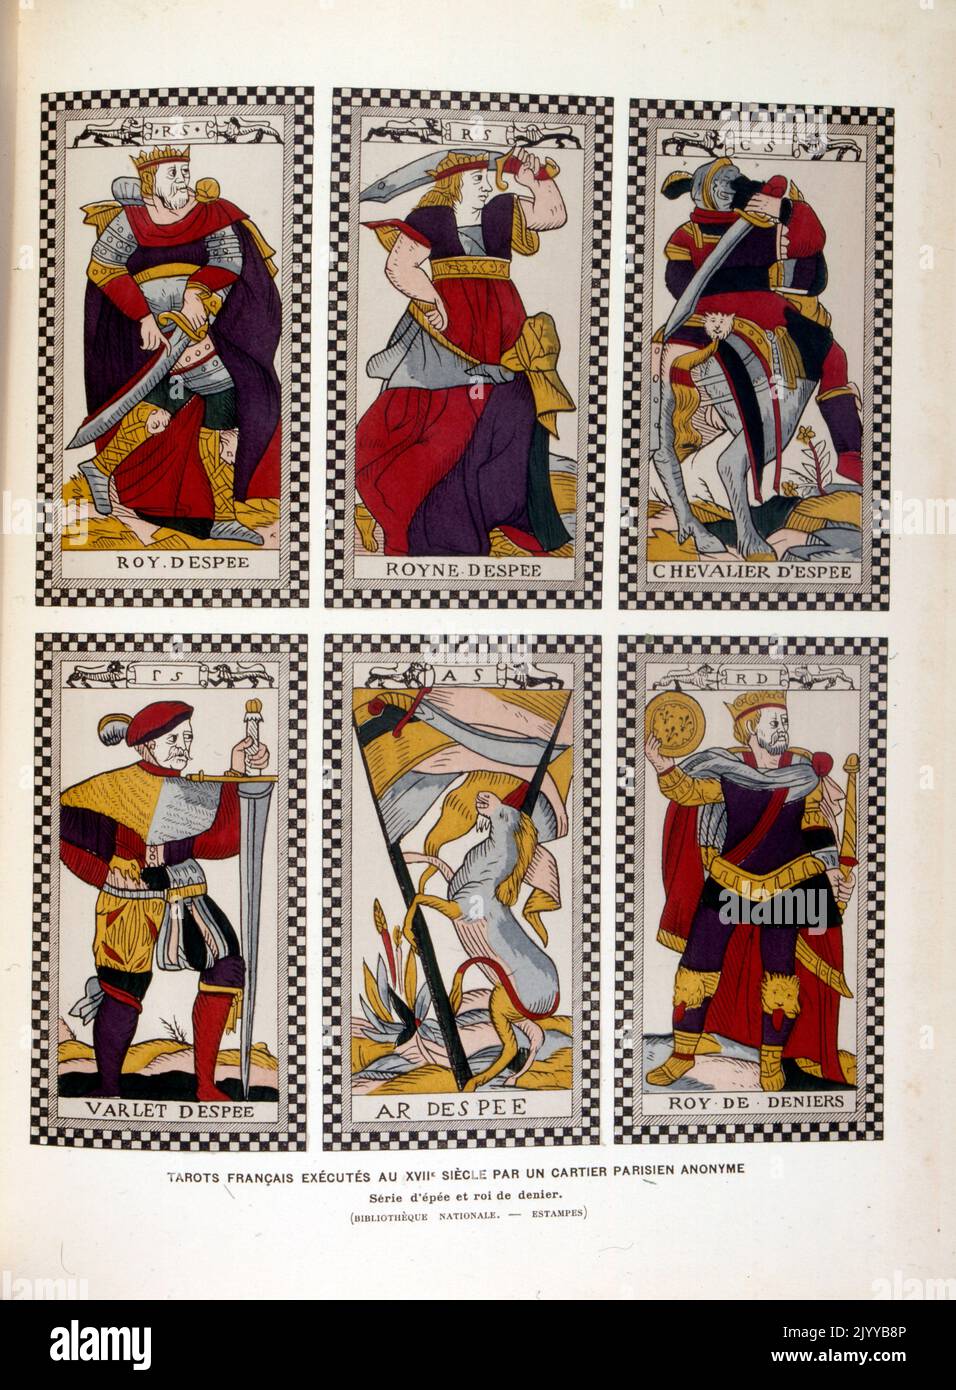 Cartas de un juego de Tarot, c.1809 (litho coloreado a mano)